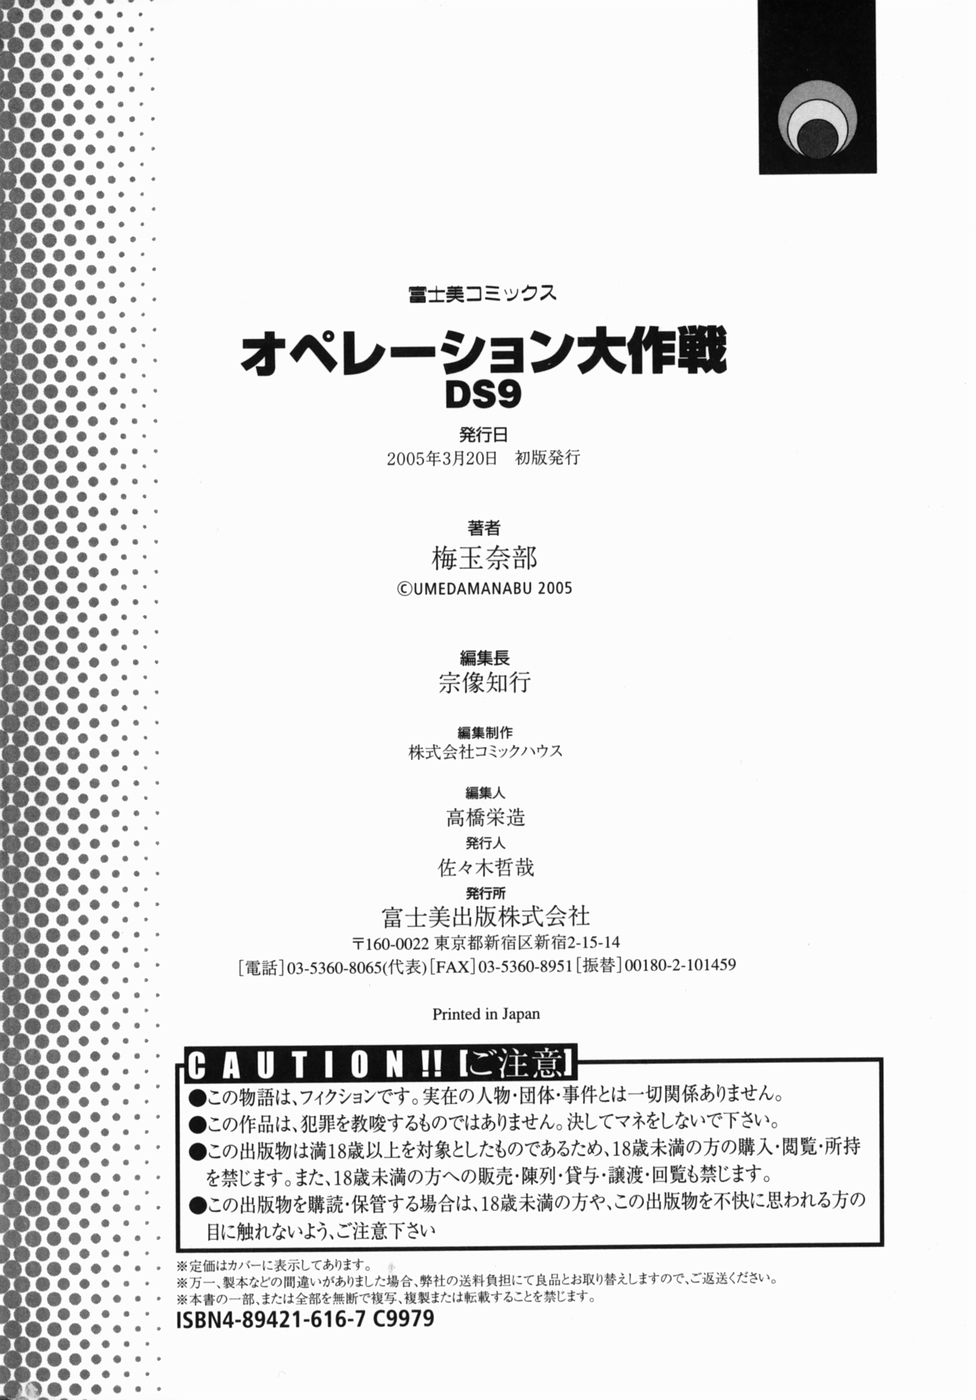 [梅玉奈部] オペレーション大作戦DS9